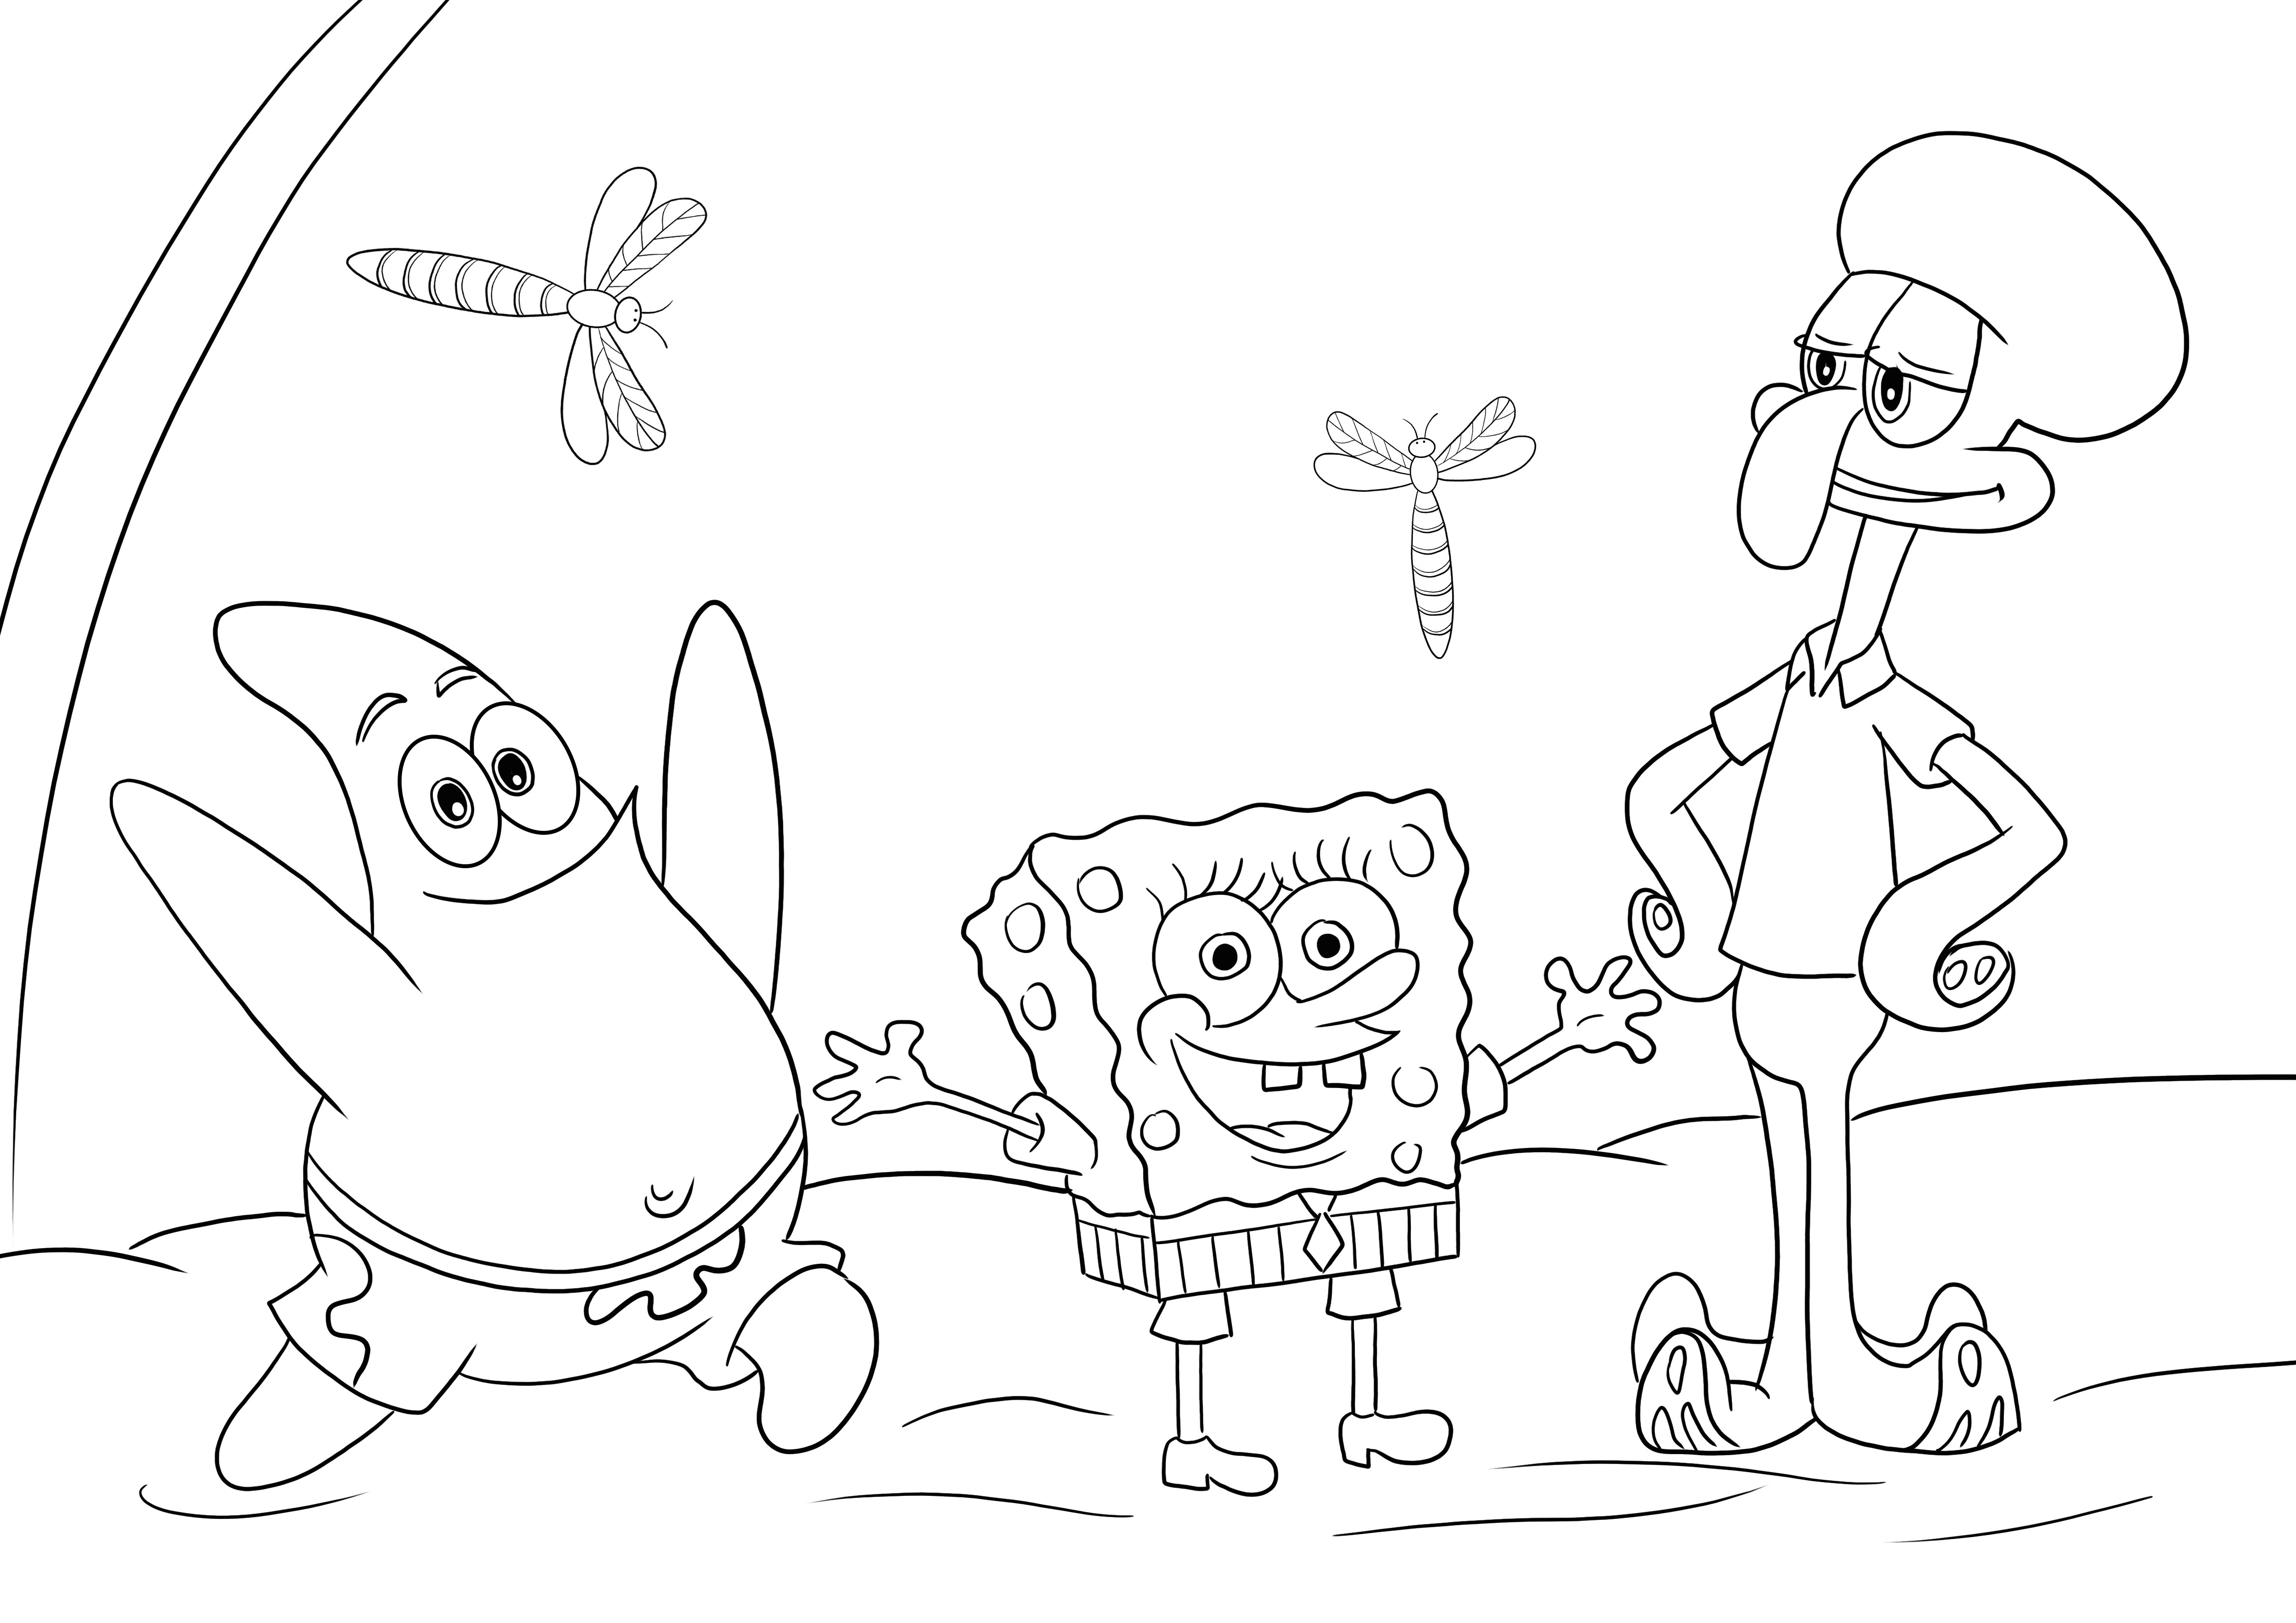 Sponge Bob-Patrick Star-Squidward ilmaisen kuvan värittämiseen ja tulostamiseen